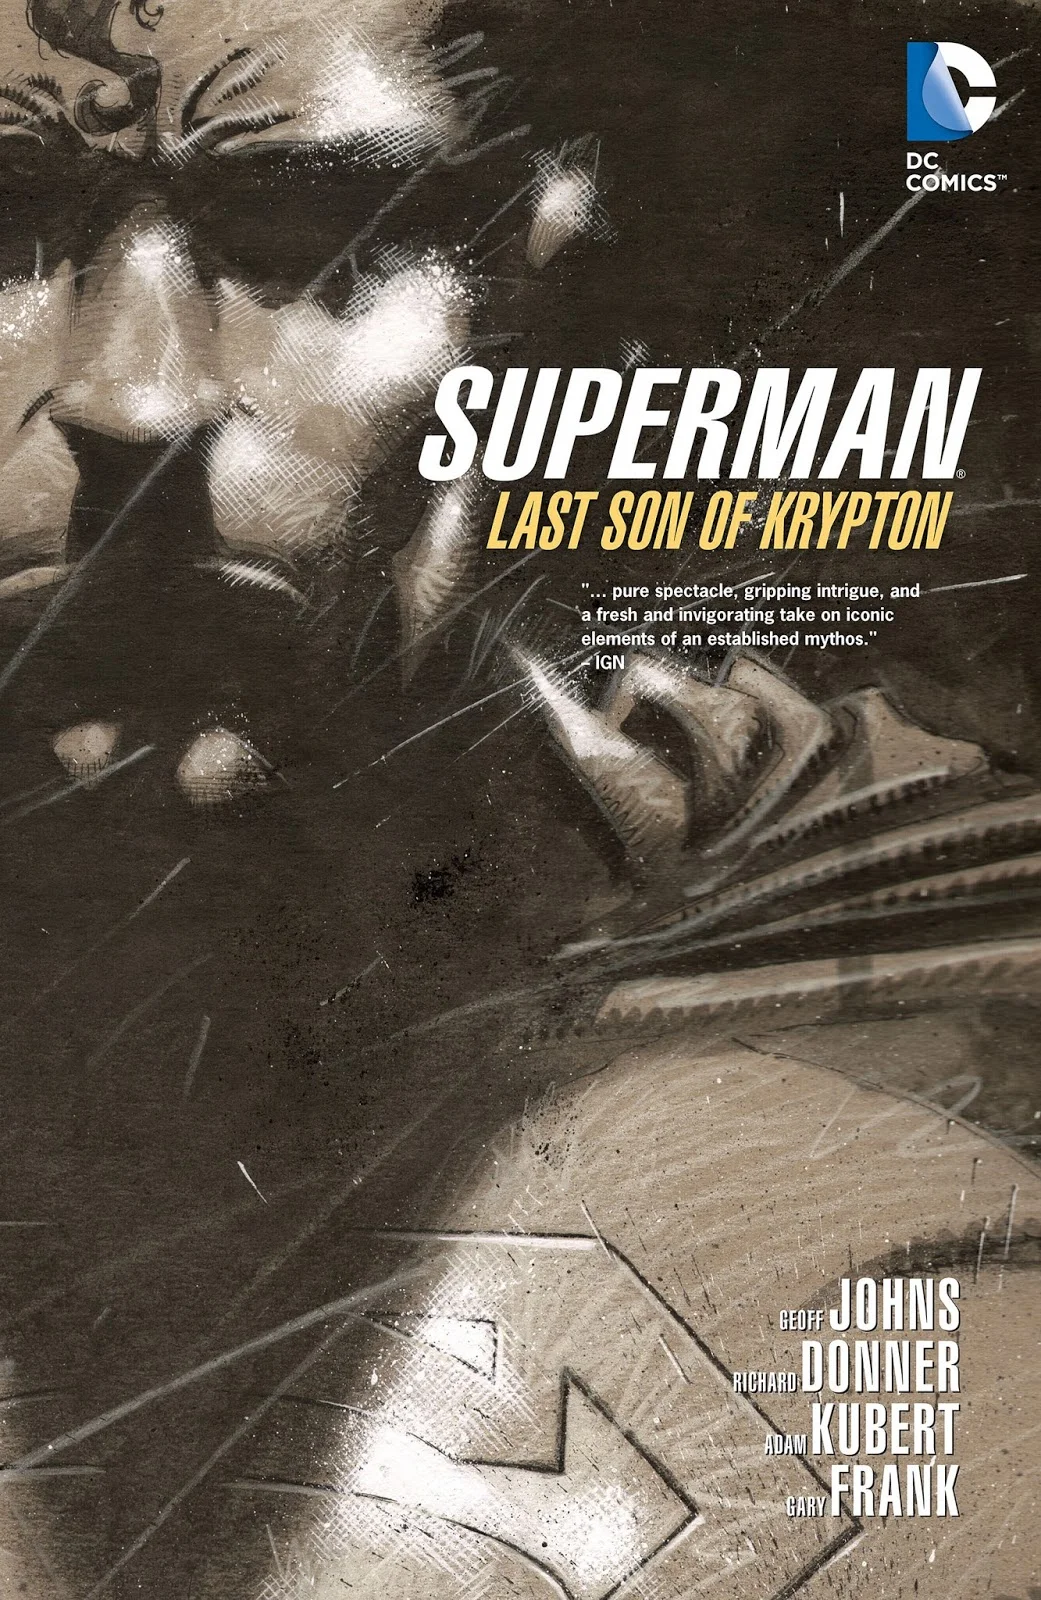 История Супермена и эволюция его образа в комиксах - фото 35